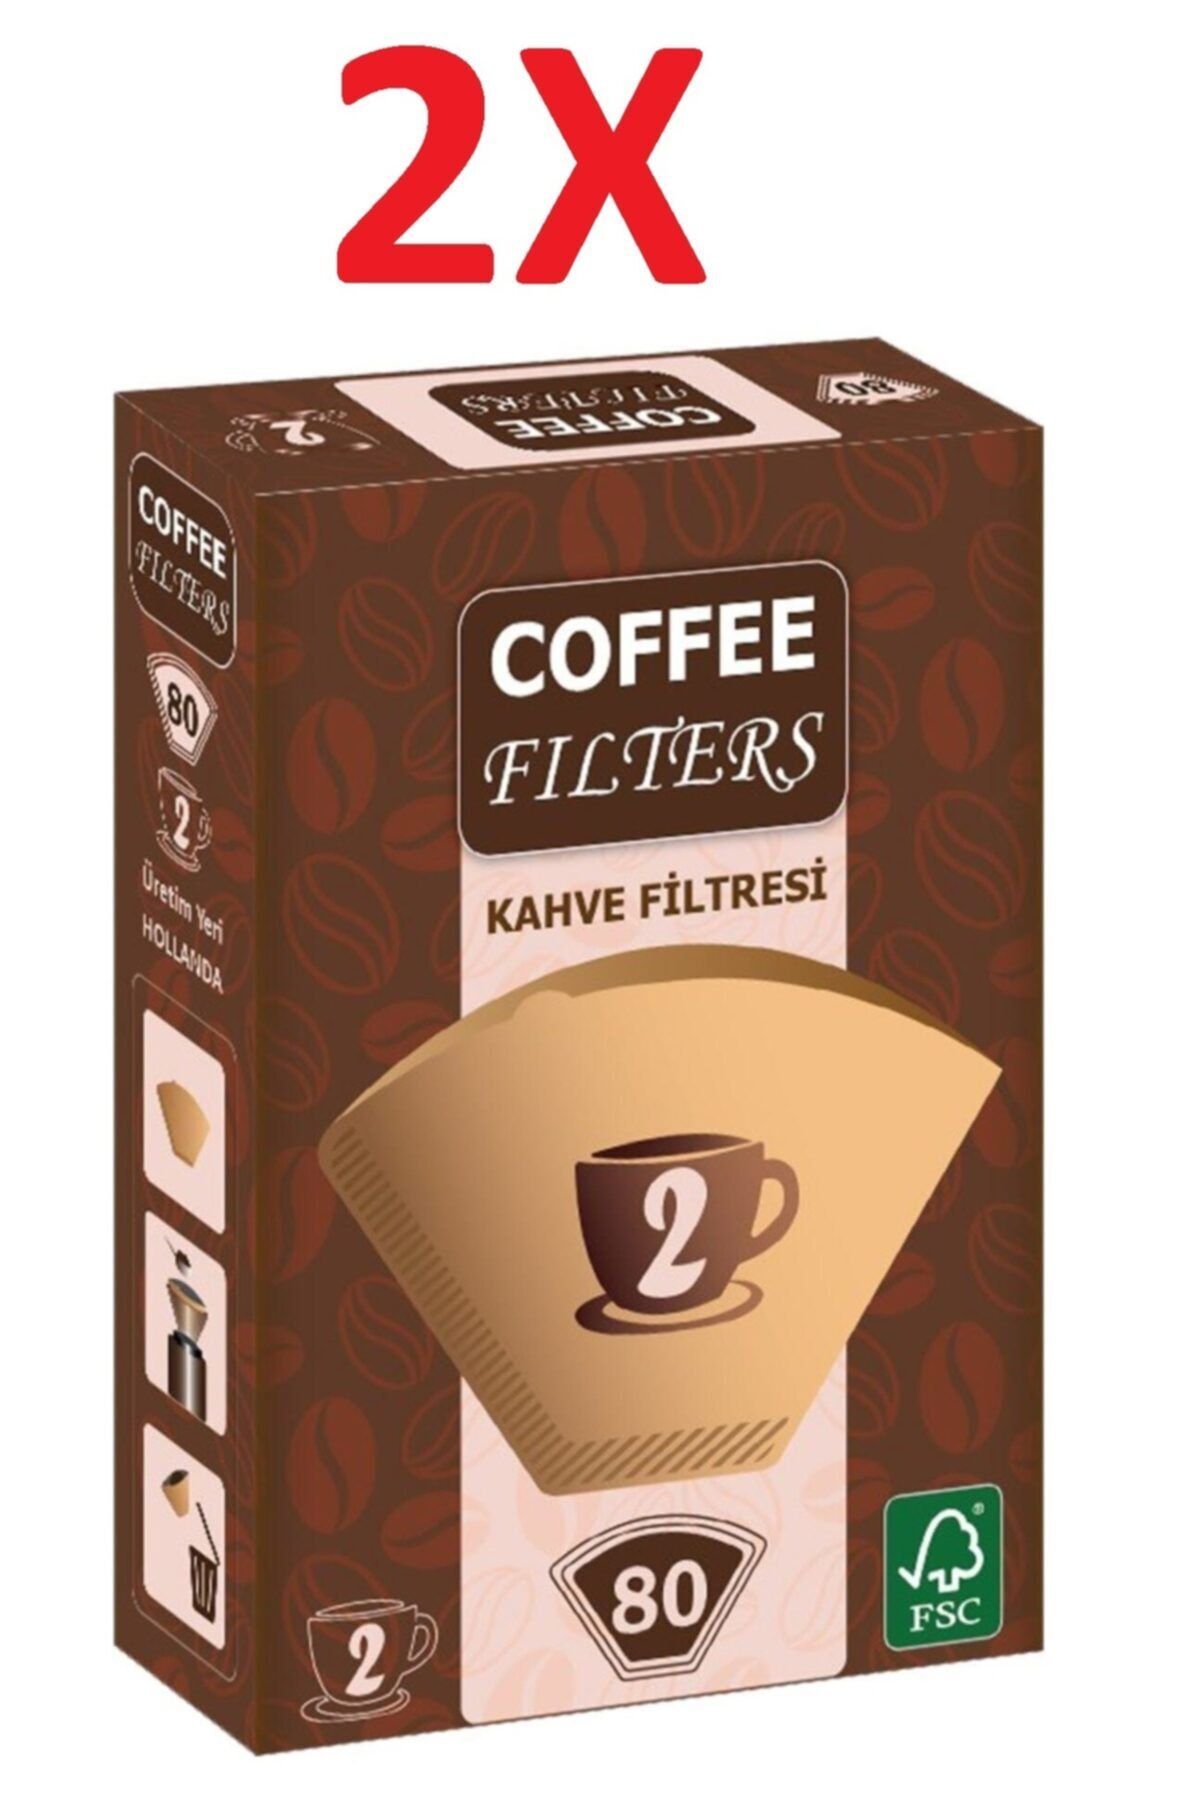 Coffee Filters Filtre Kahve Kağıdı 1/2 2 Numara 2x80'lı Paket Toplam 160 Adet